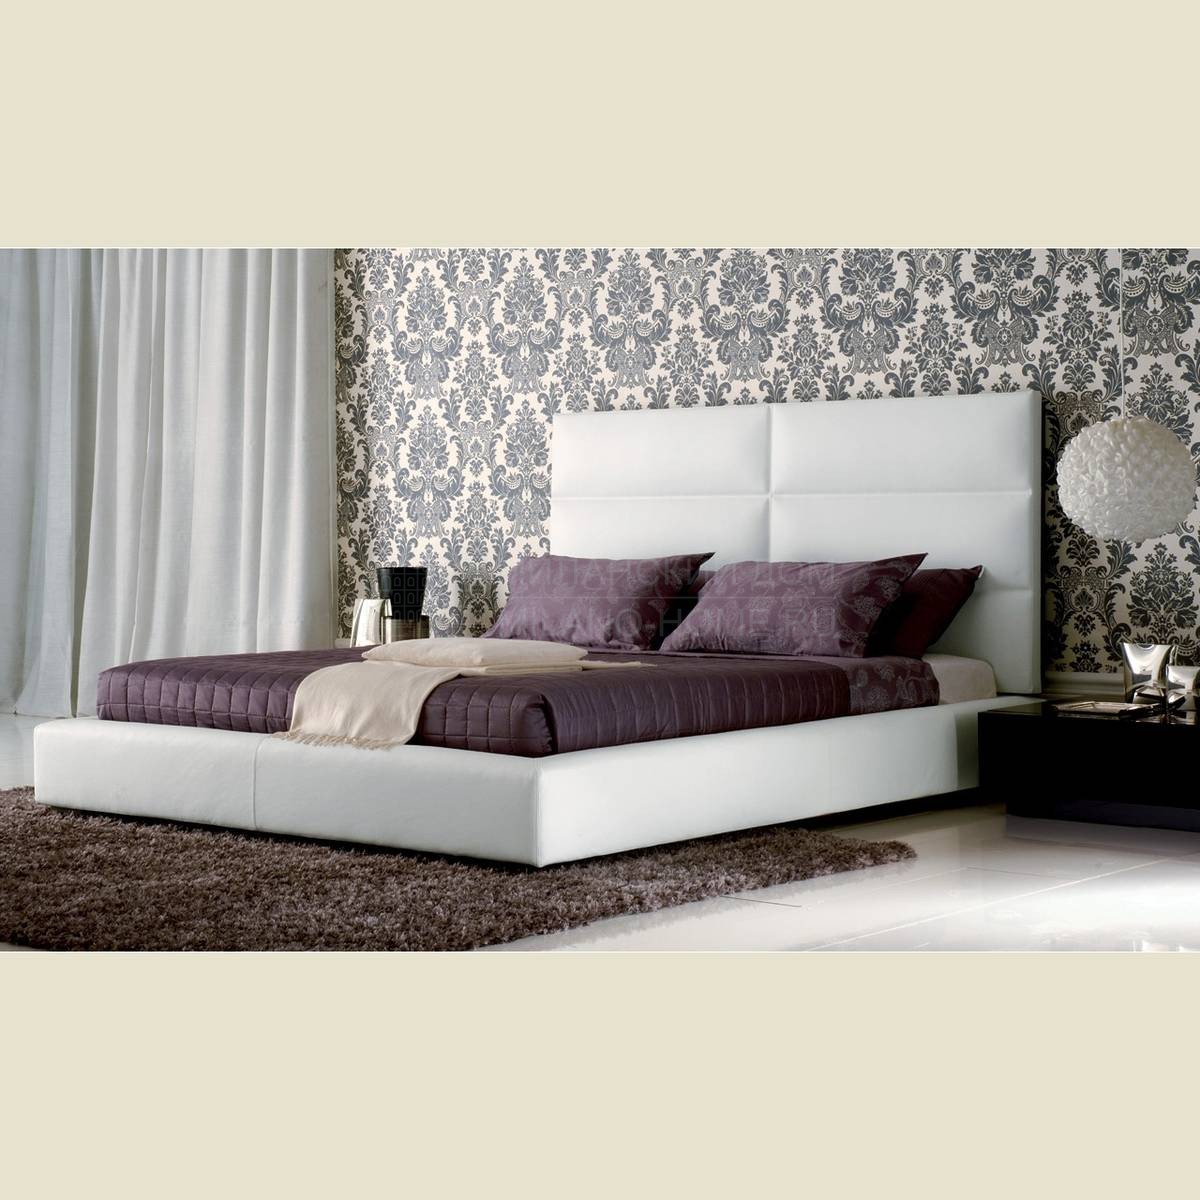 Кровать с мягким изголовьем Chelsea/bed из Италии фабрики BESANA